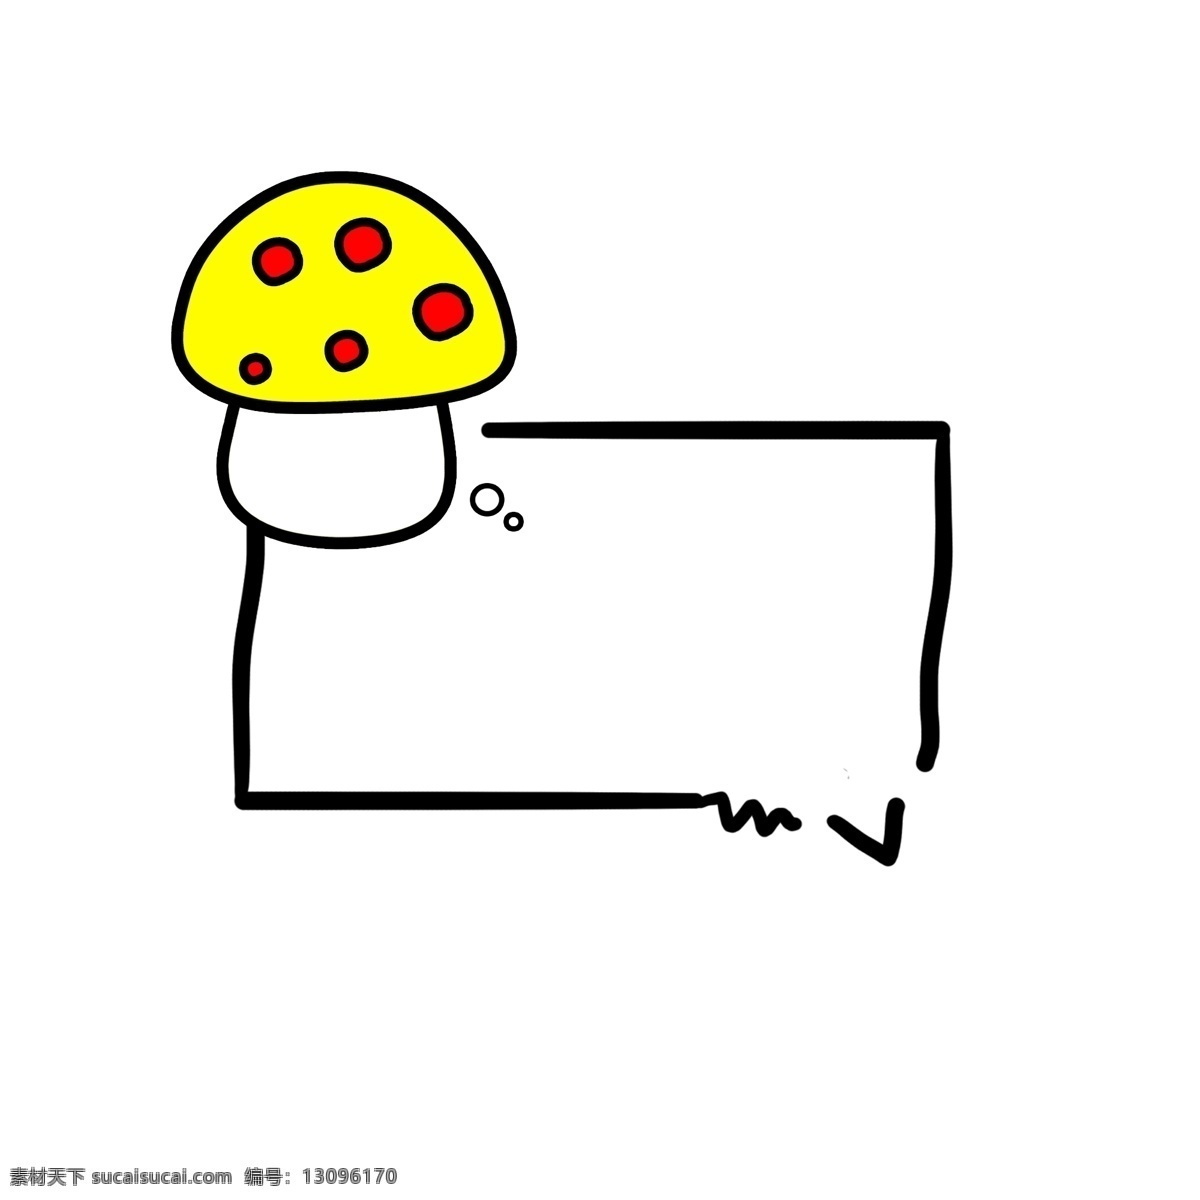 卡通 矩形 植物 蘑菇 对话框 边框 可爱 元素 黄色